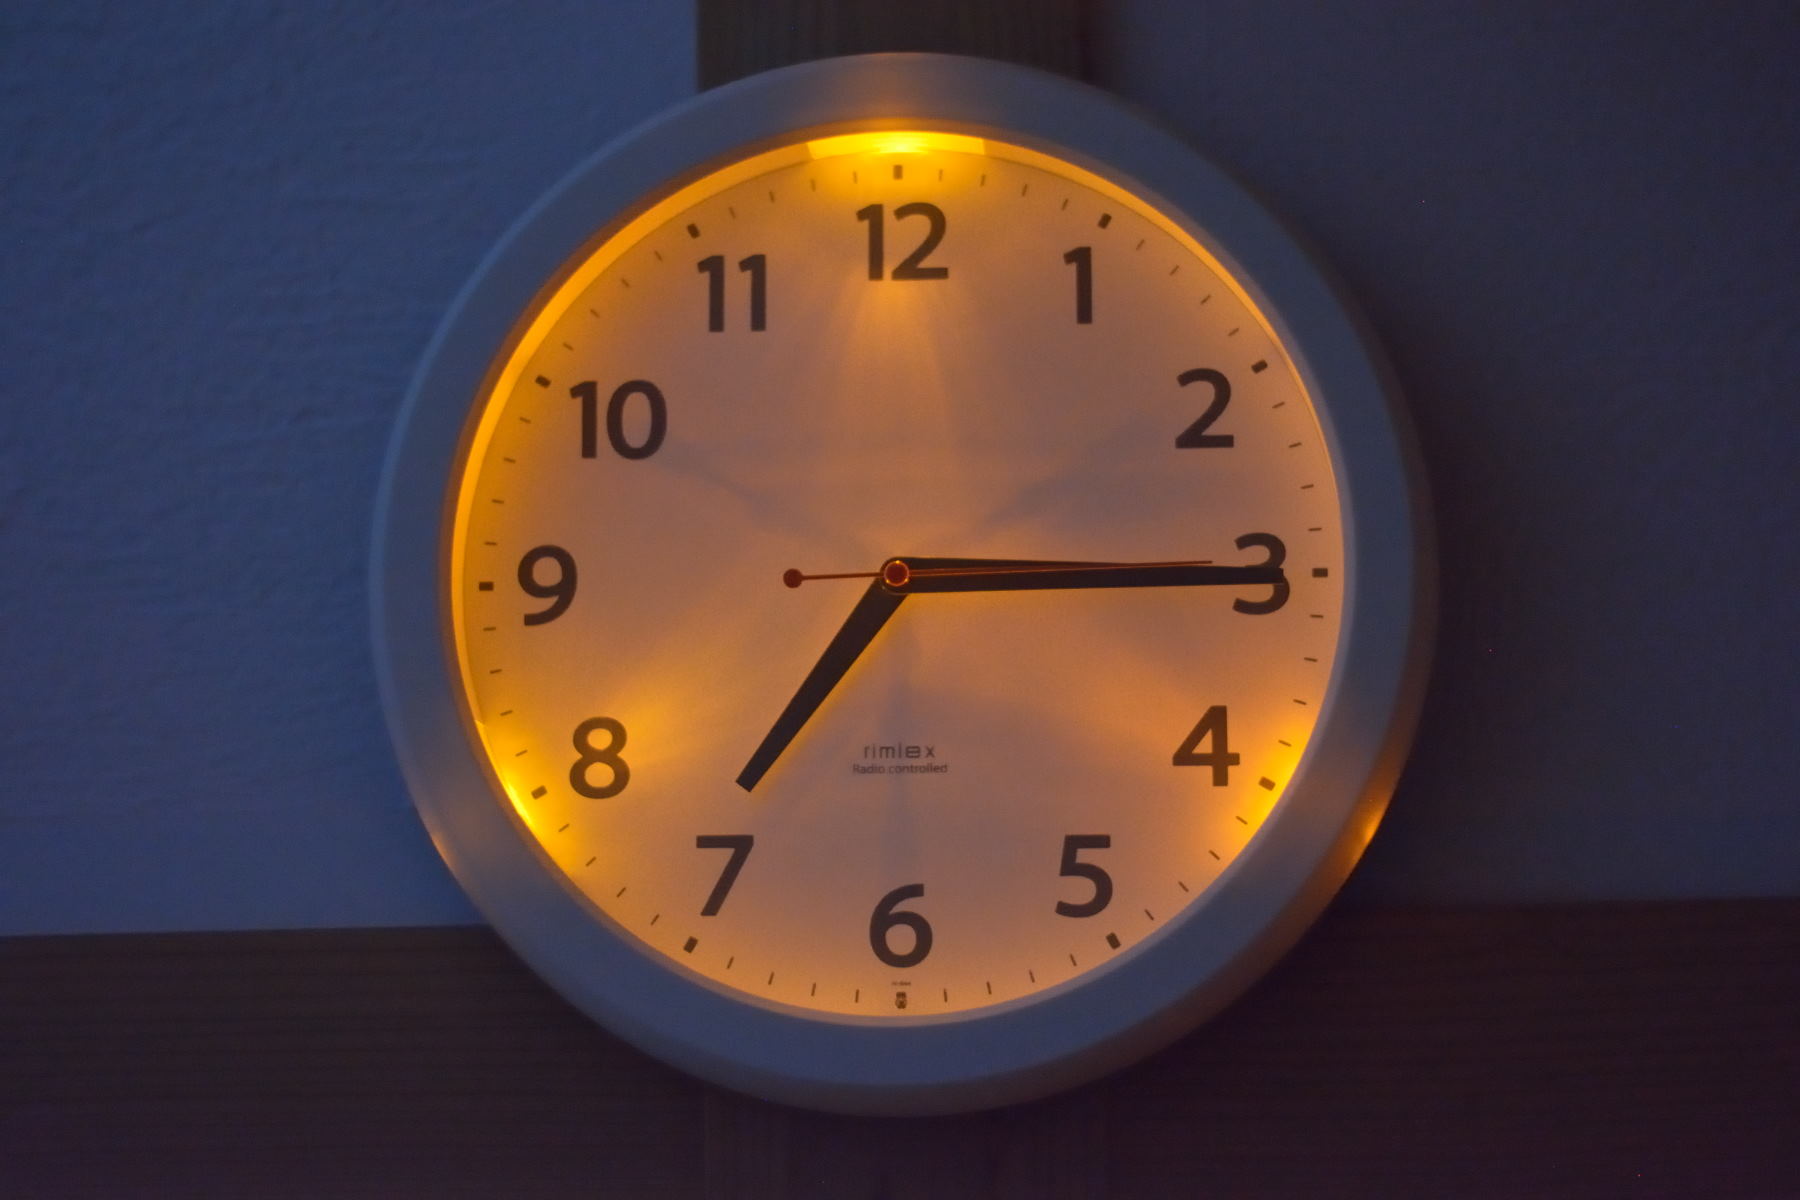 ディーゼル DIESEL 腕時計 とけい Watch 蛍光 蓄光 廃盤 限定 - 時計